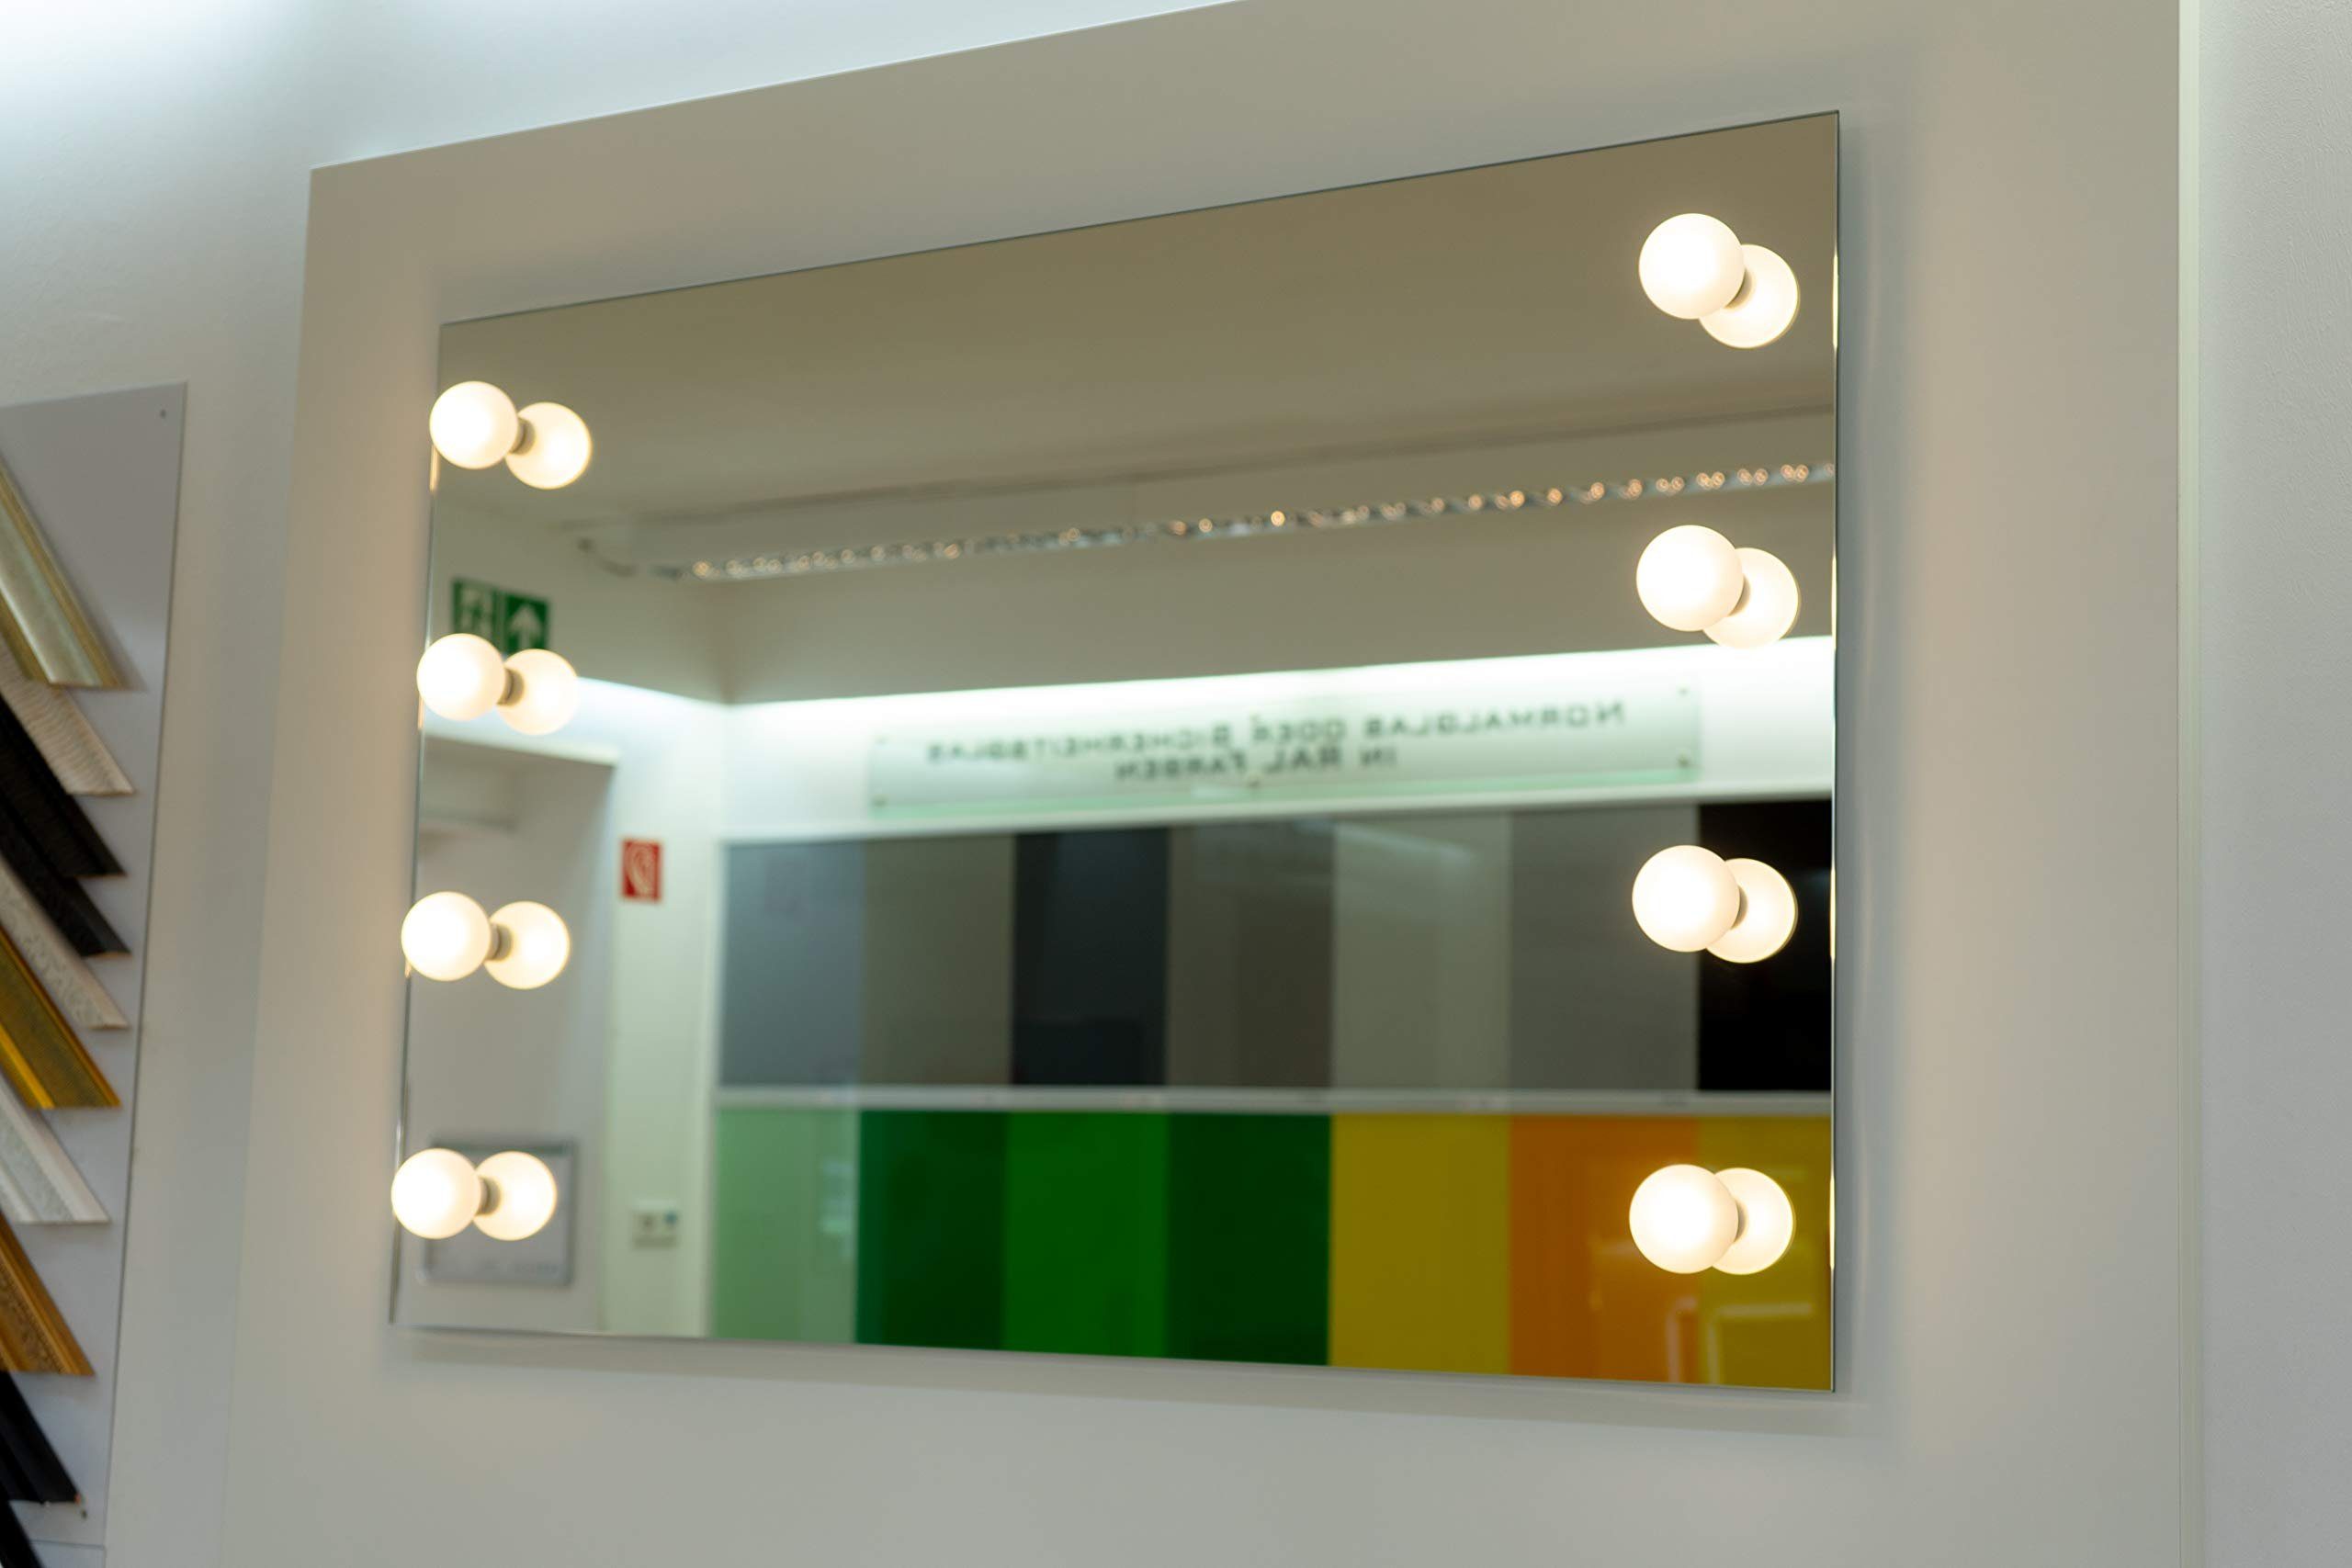 Chim Lichtspiegel LED Badspiegel MySpiegel.de